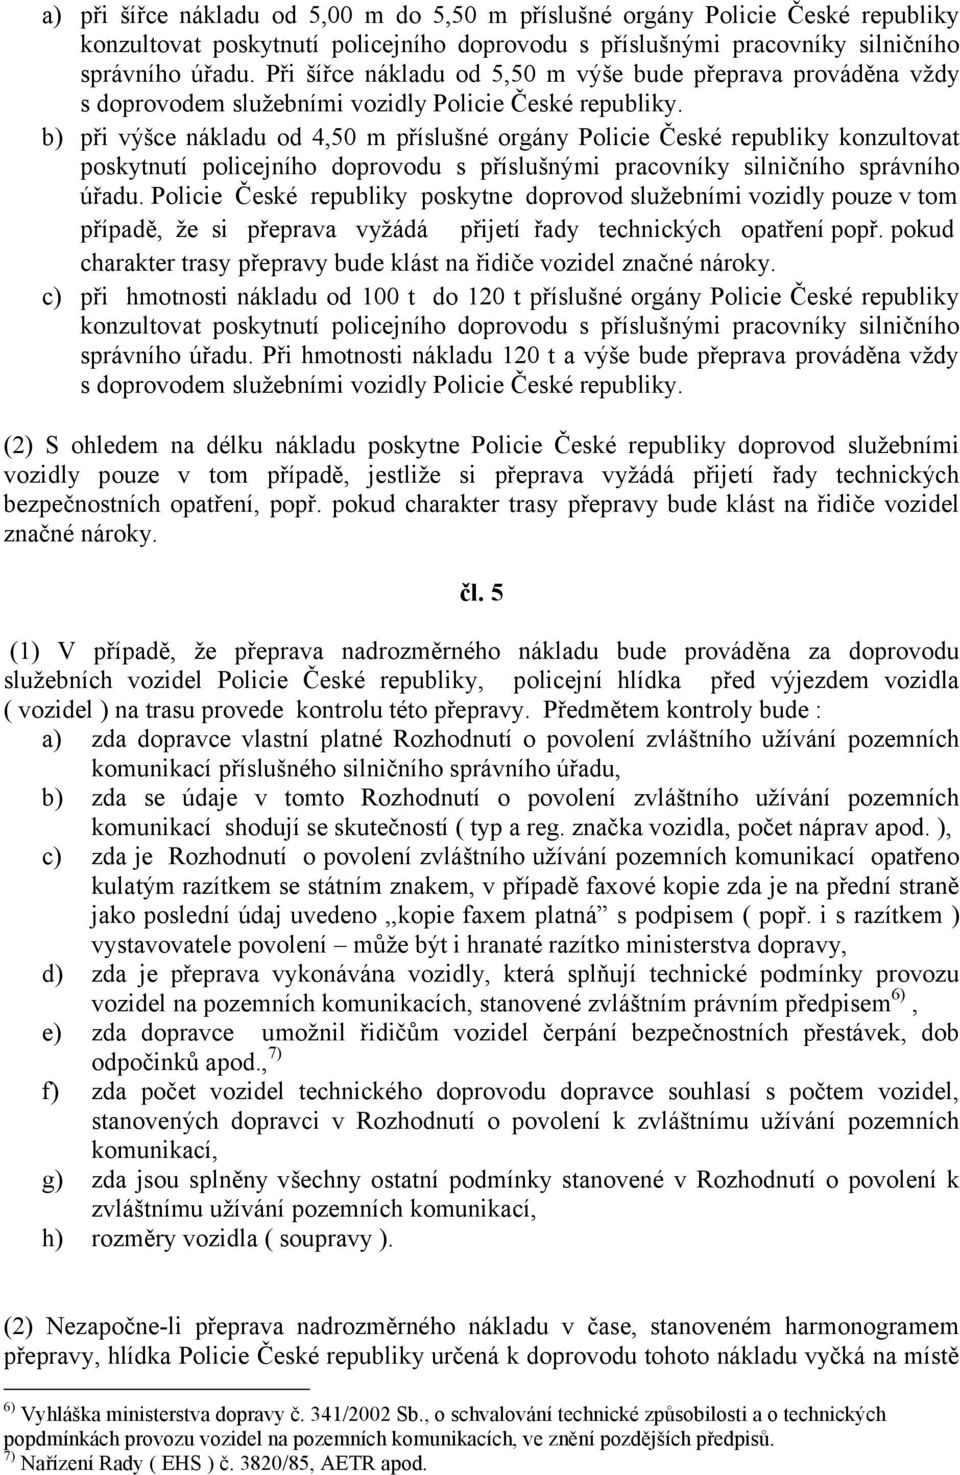 b) při výšce nákladu od 4,50 m příslušné orgány Policie České republiky konzultovat poskytnutí policejního doprovodu s příslušnými pracovníky silničního správního úřadu.